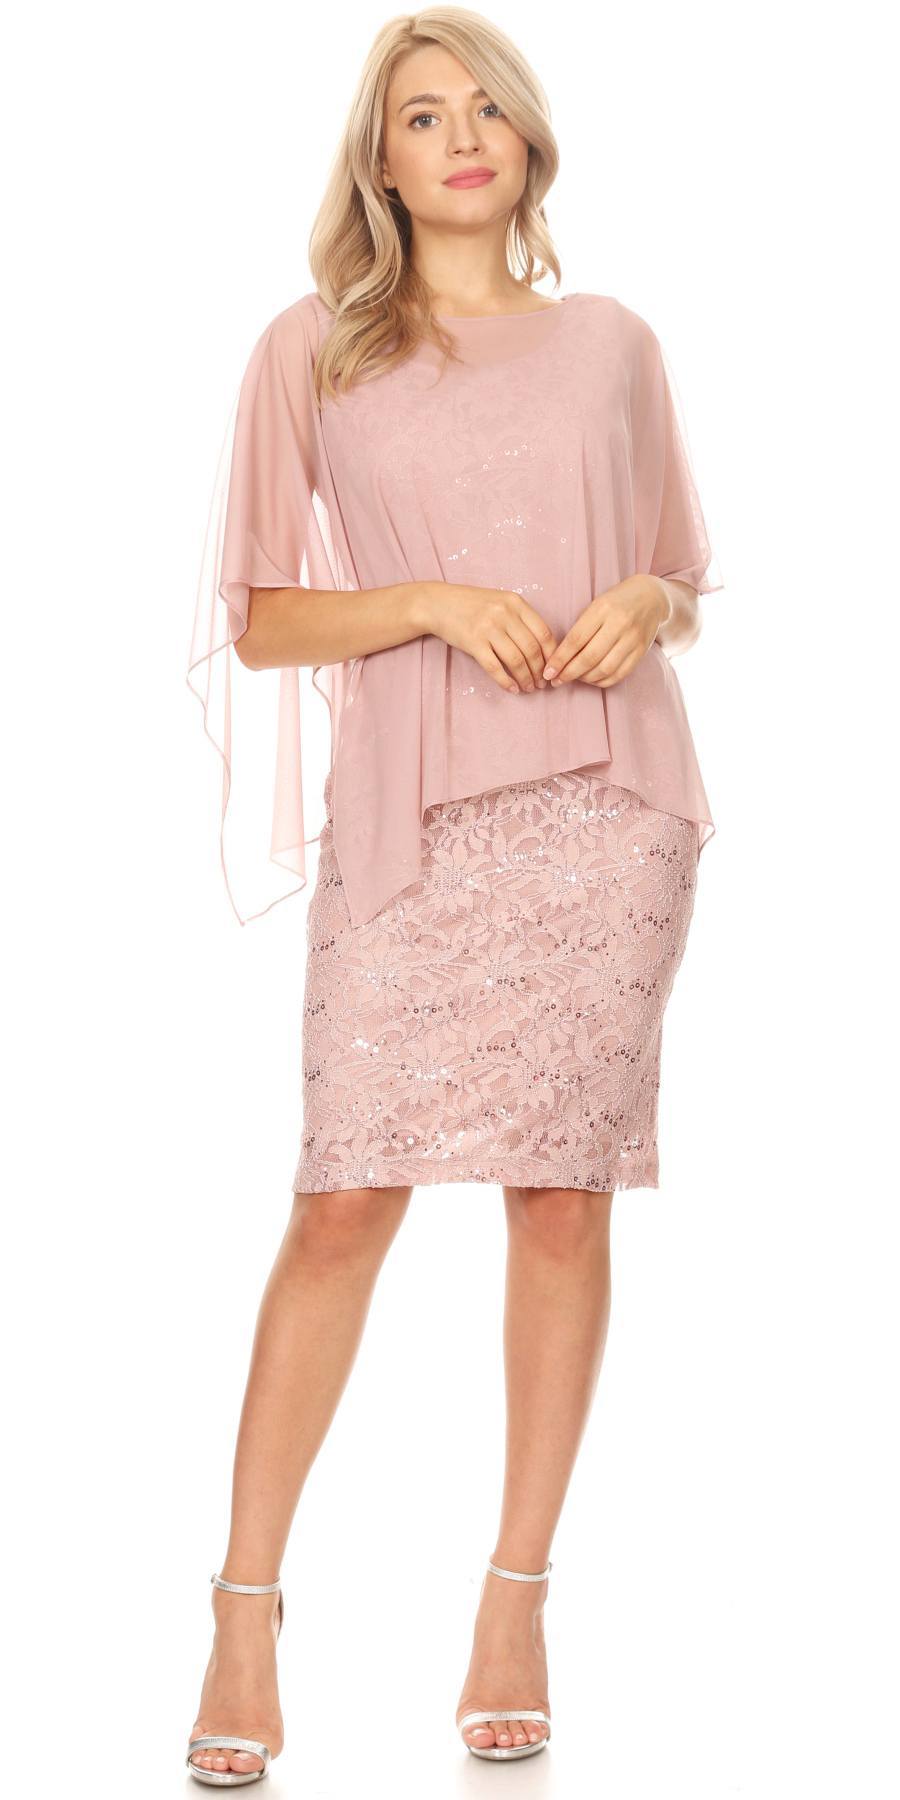 Celavie 6365 Lace Short Formal Poncho Dress Mauve – DiscountDressShop